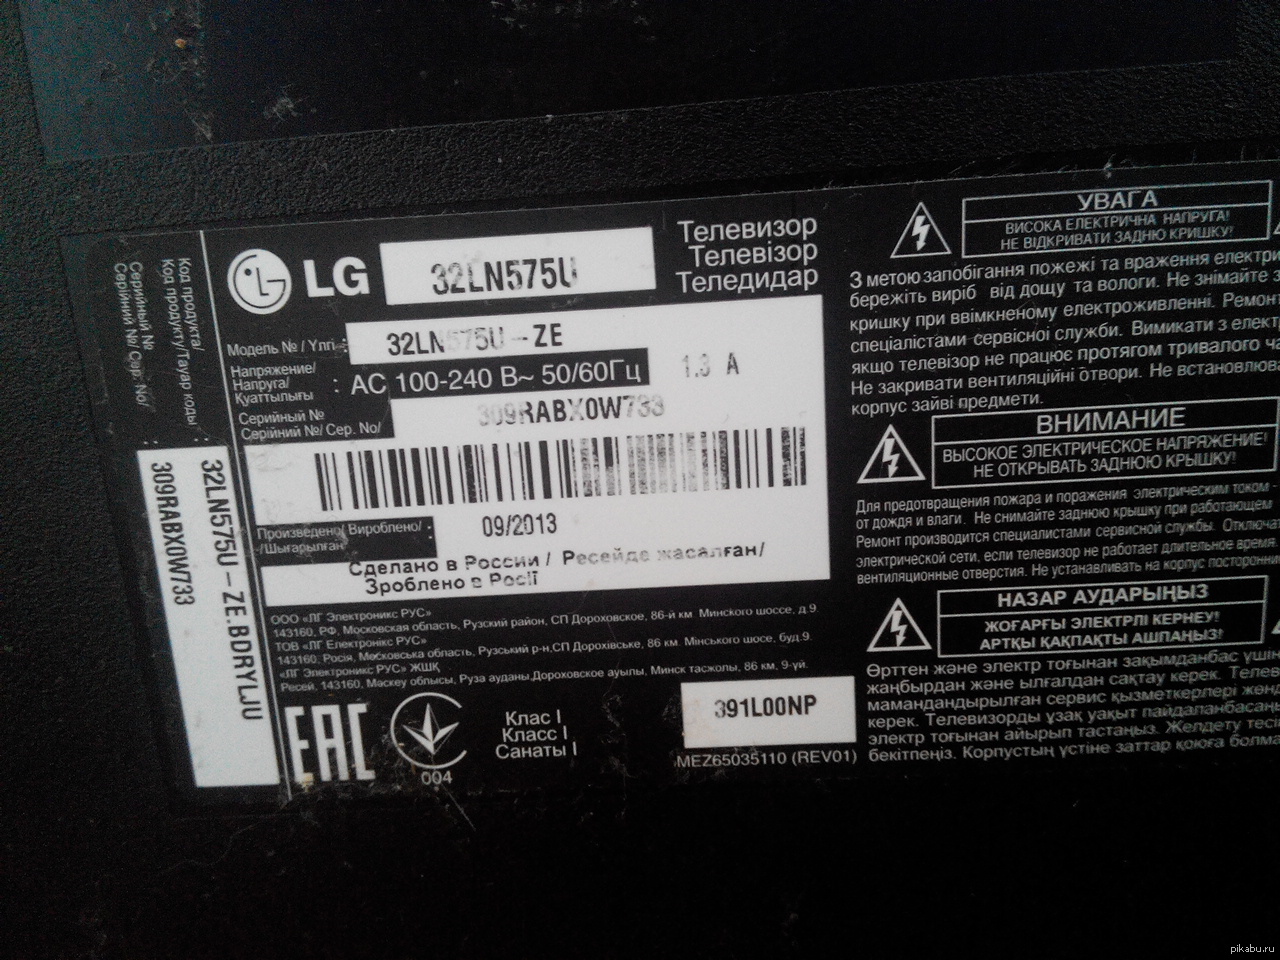 LG 32lb530u схема. Инструкция к телевизору LG 32lb530u. 32ln572b-th год выпуска. LG model no CD 641 A Series технические характеристики.